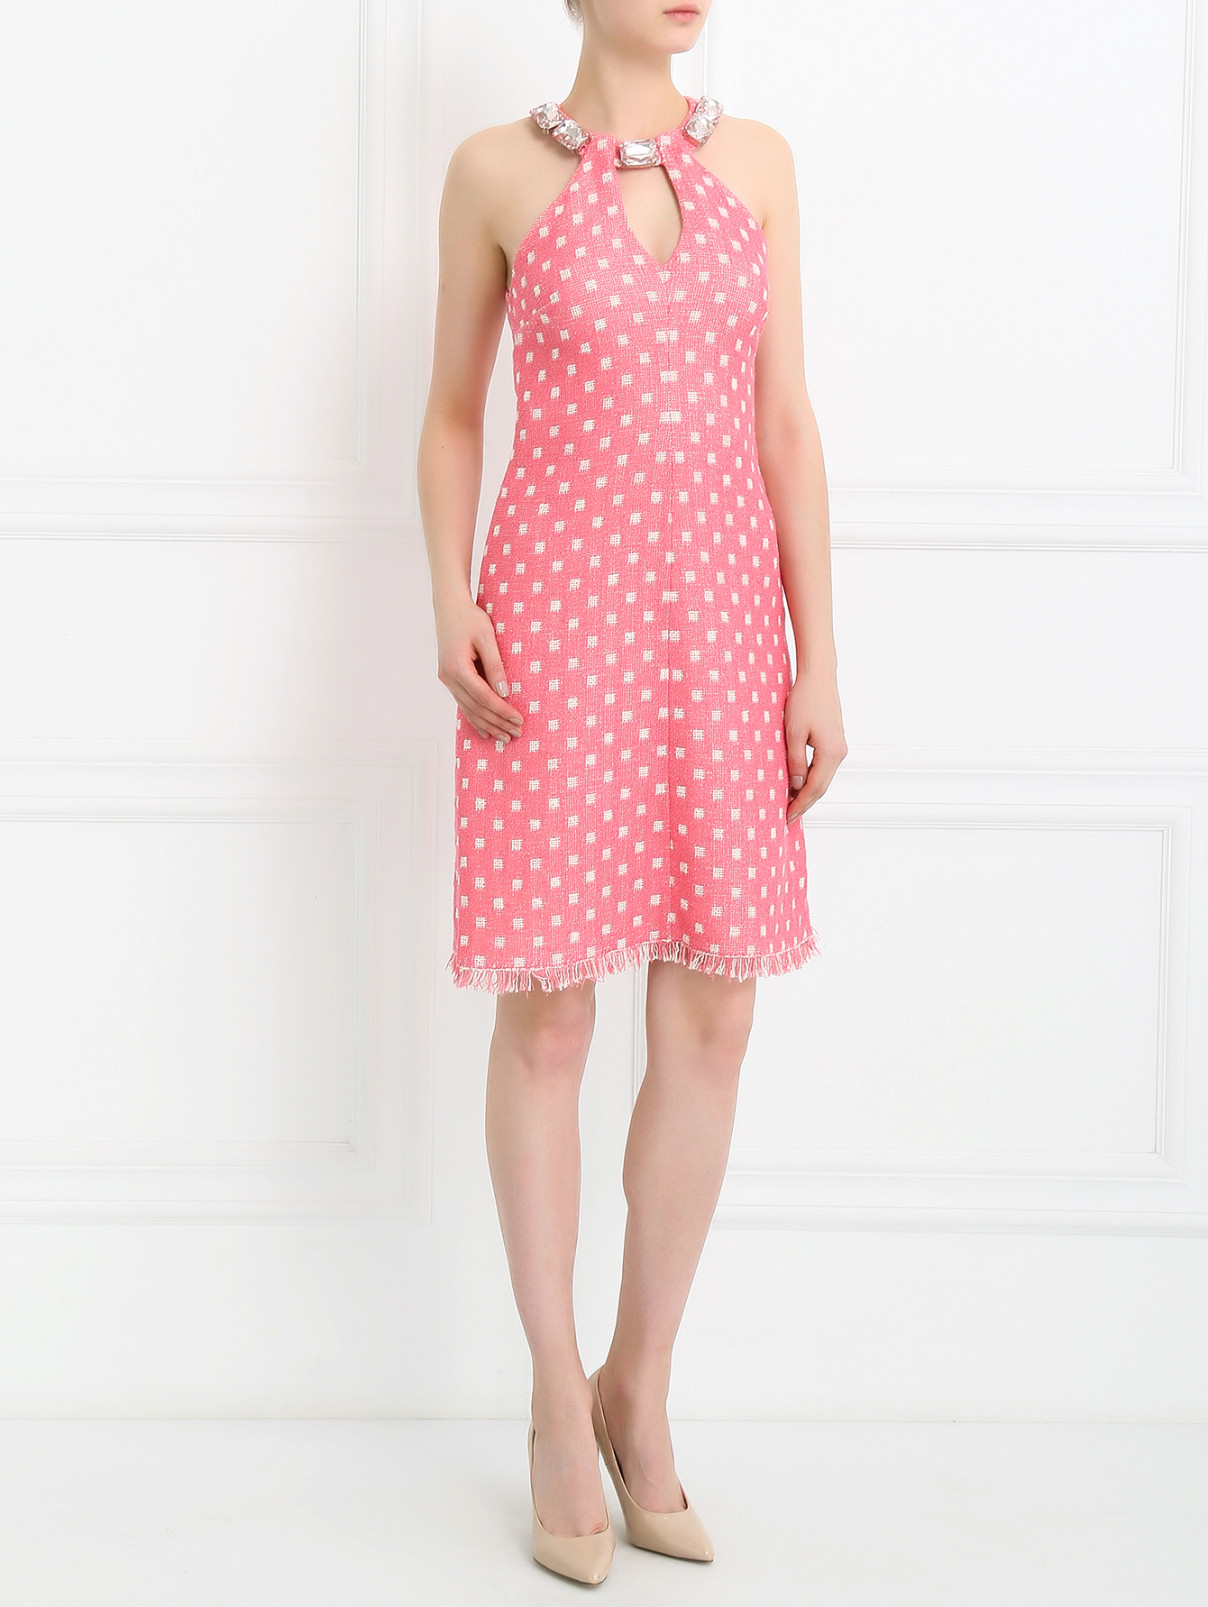 Платье-мини декорированное камнями Moschino Cheap&Chic  –  Модель Общий вид  – Цвет:  Розовый